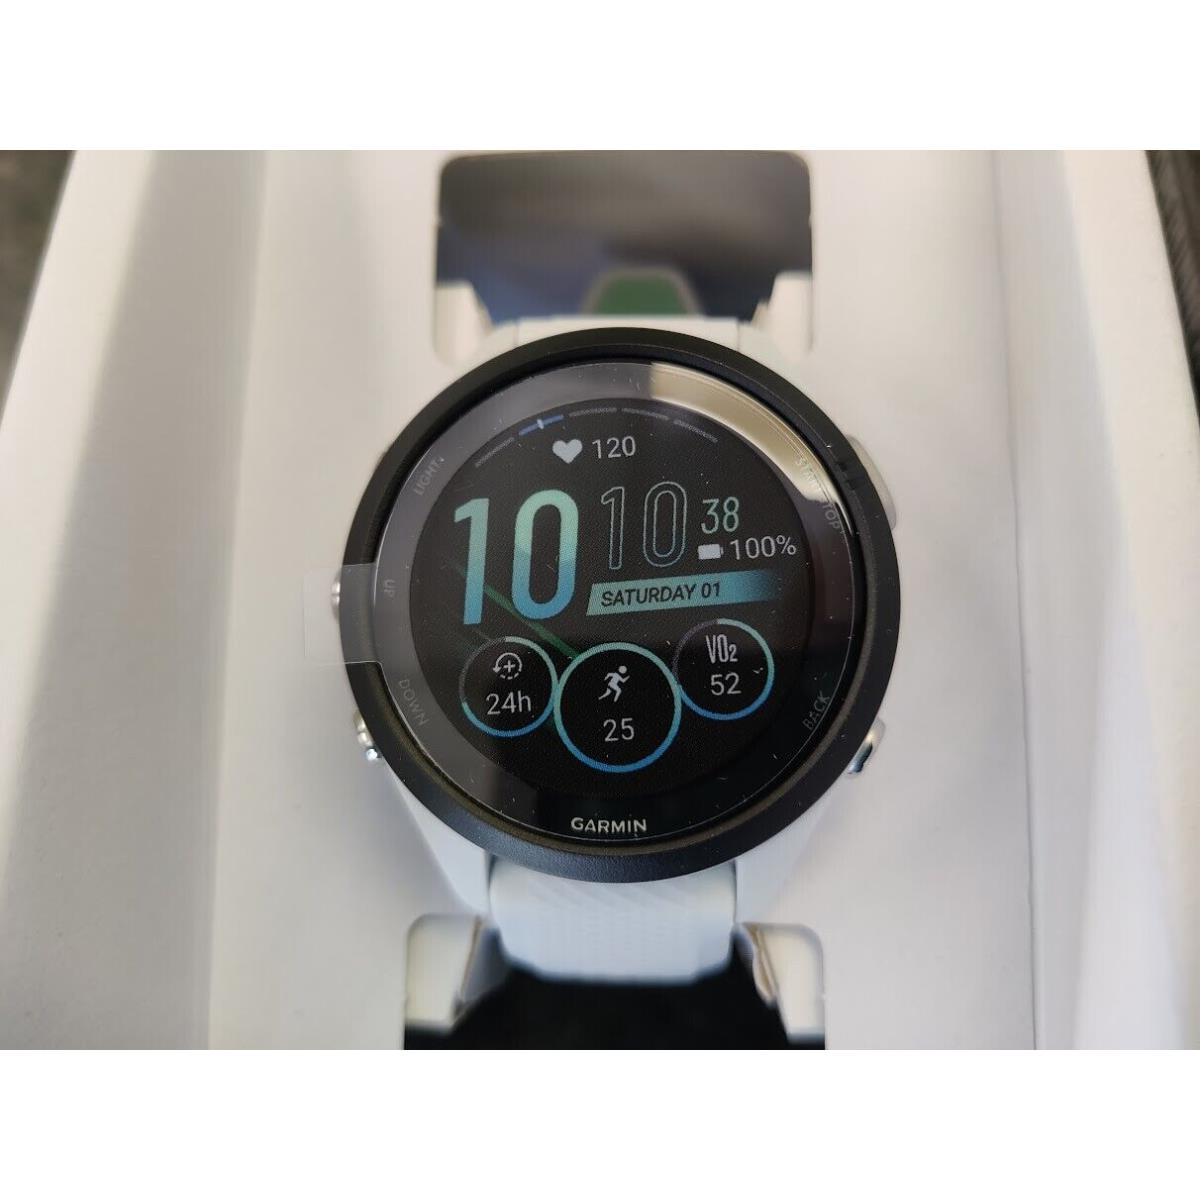 Garmin Forerunner 265S Whitestone White and Teal Smartwatch Smart Watch Running